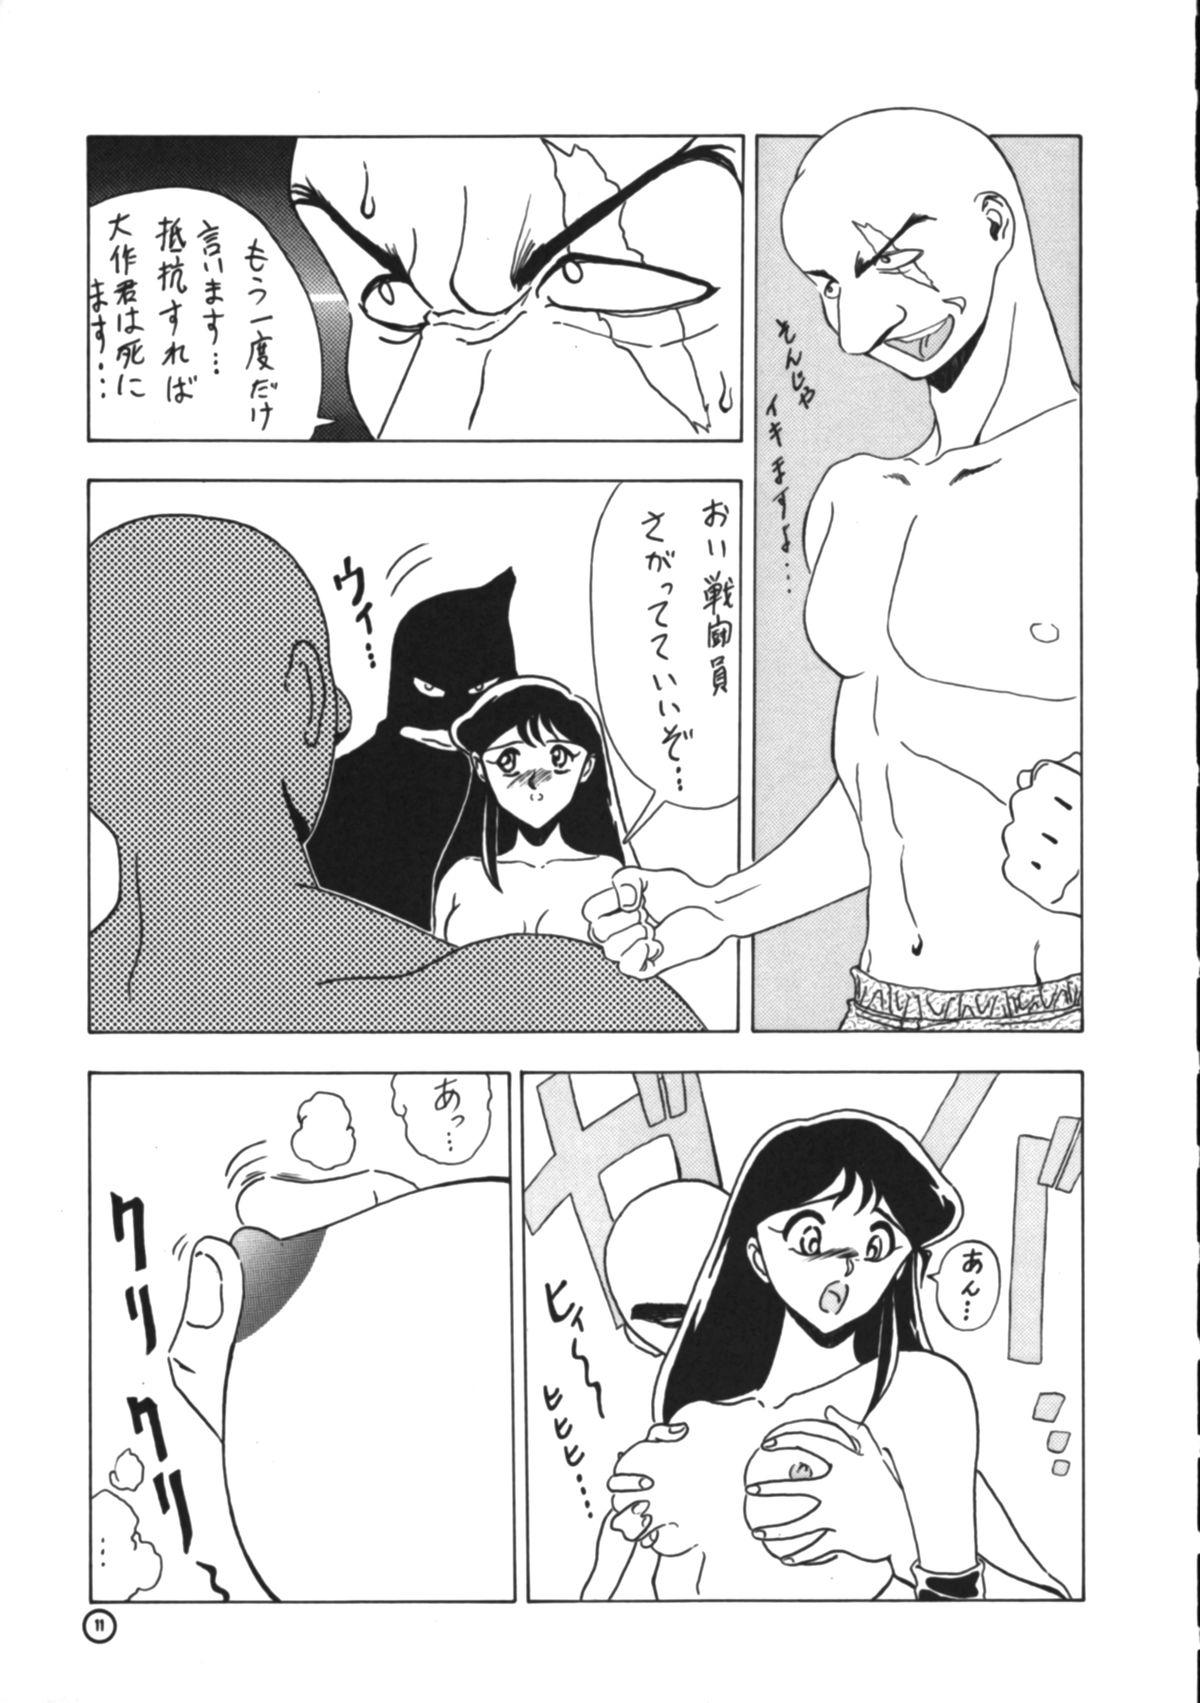 Handjobs Dendoushiki Shudou - Giant robo Ex Girlfriend - Page 10